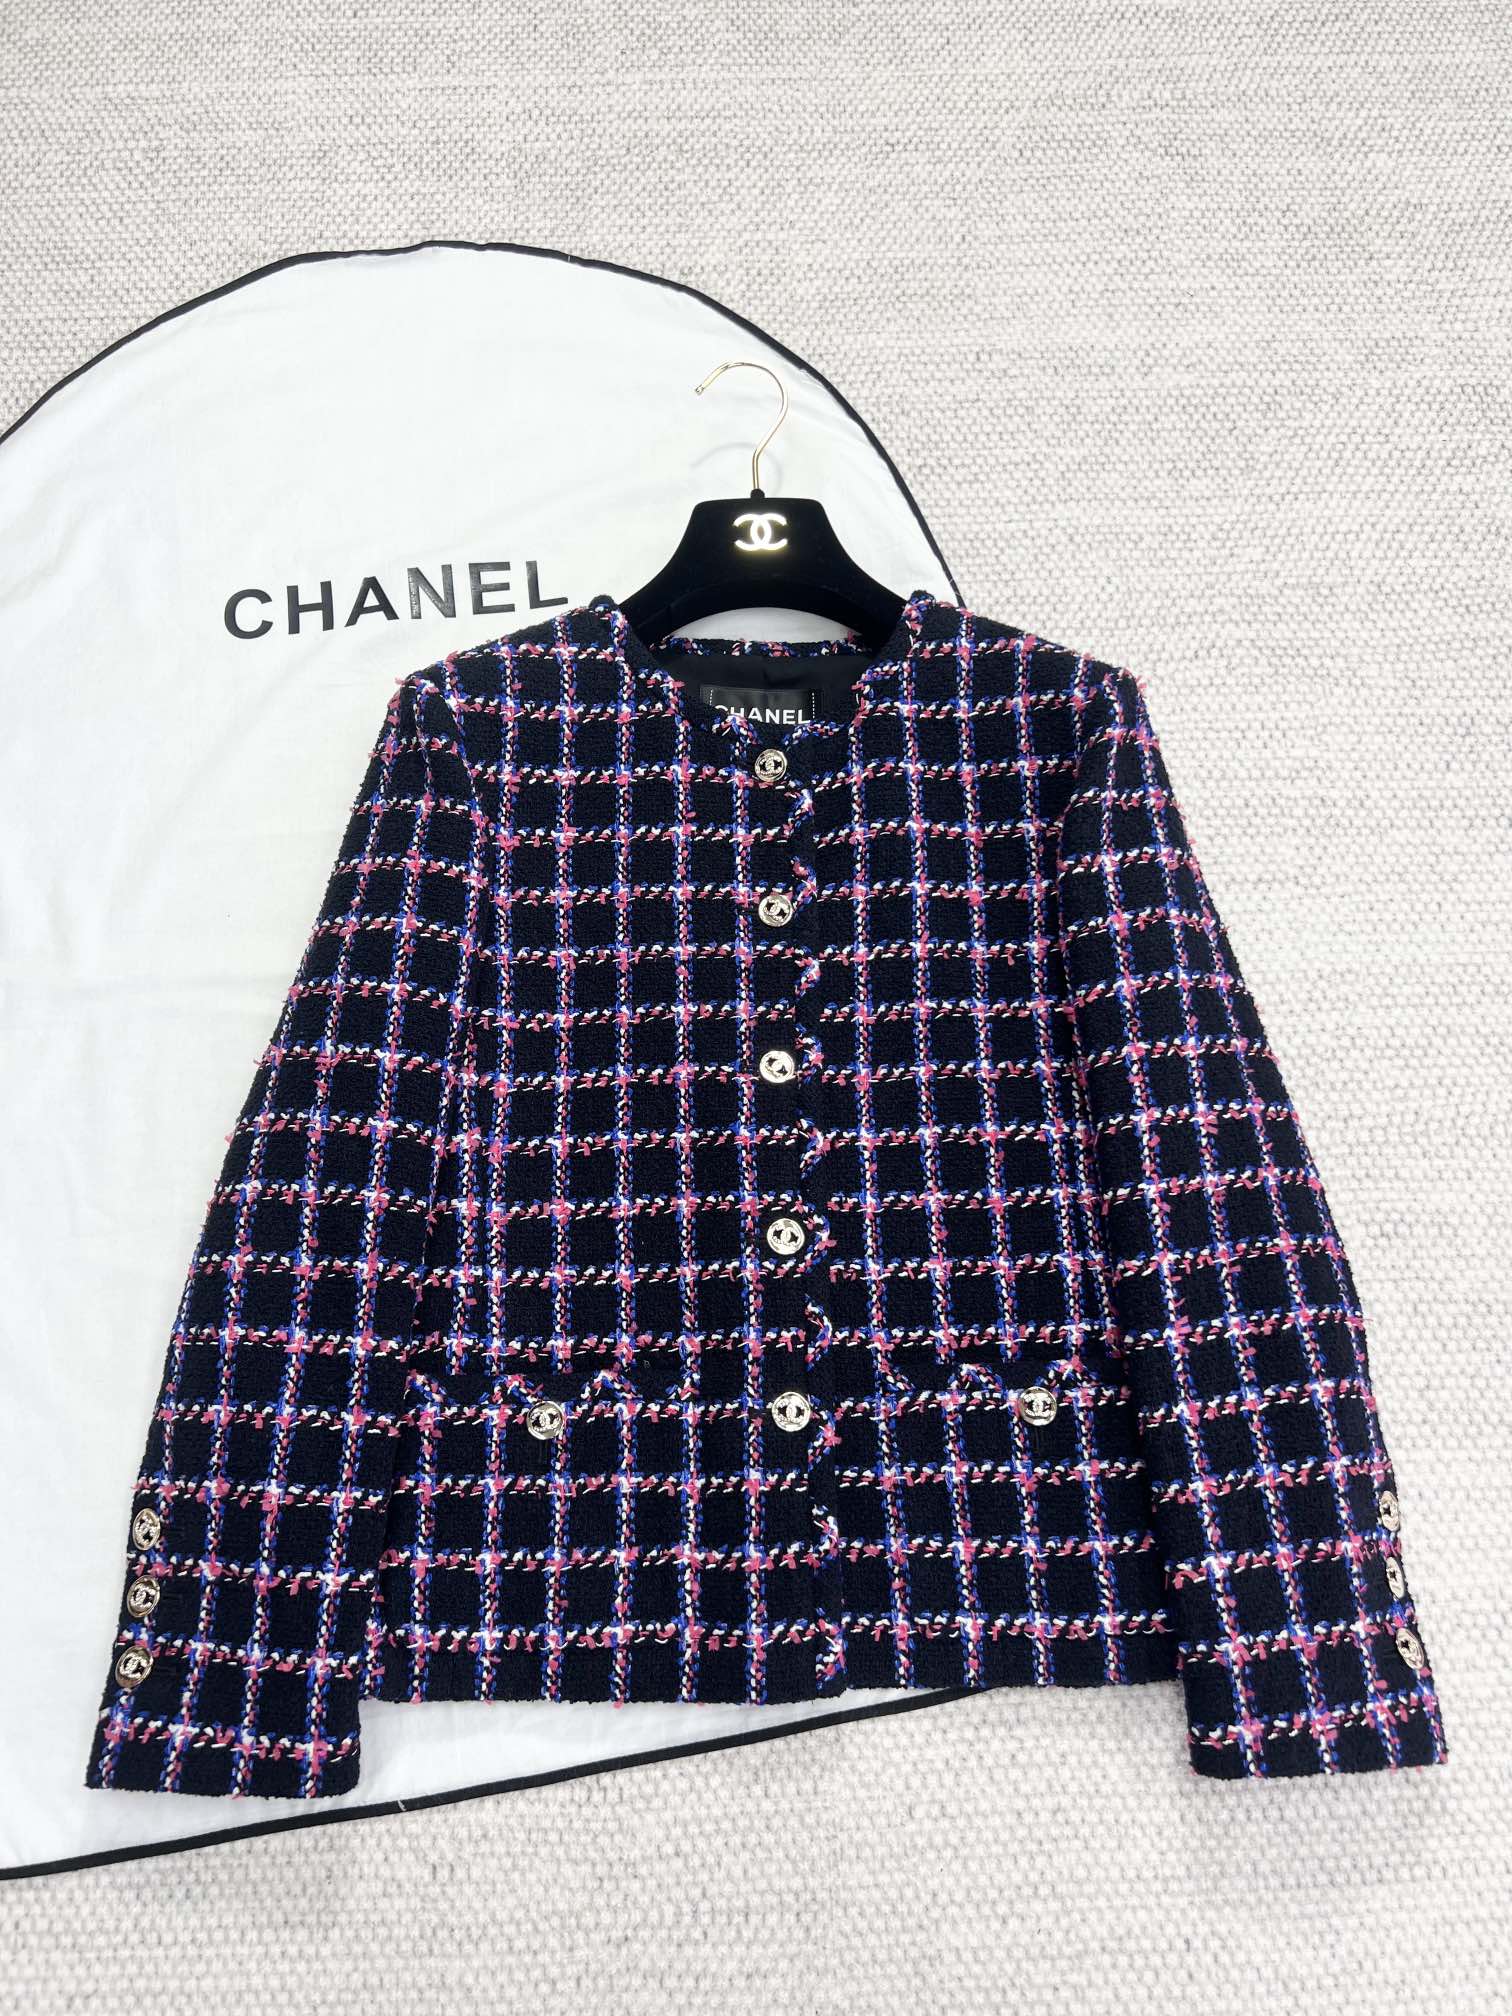 Chanel Roupa Casacos & Jaquetas Azul Rosa Branco Malha Seda